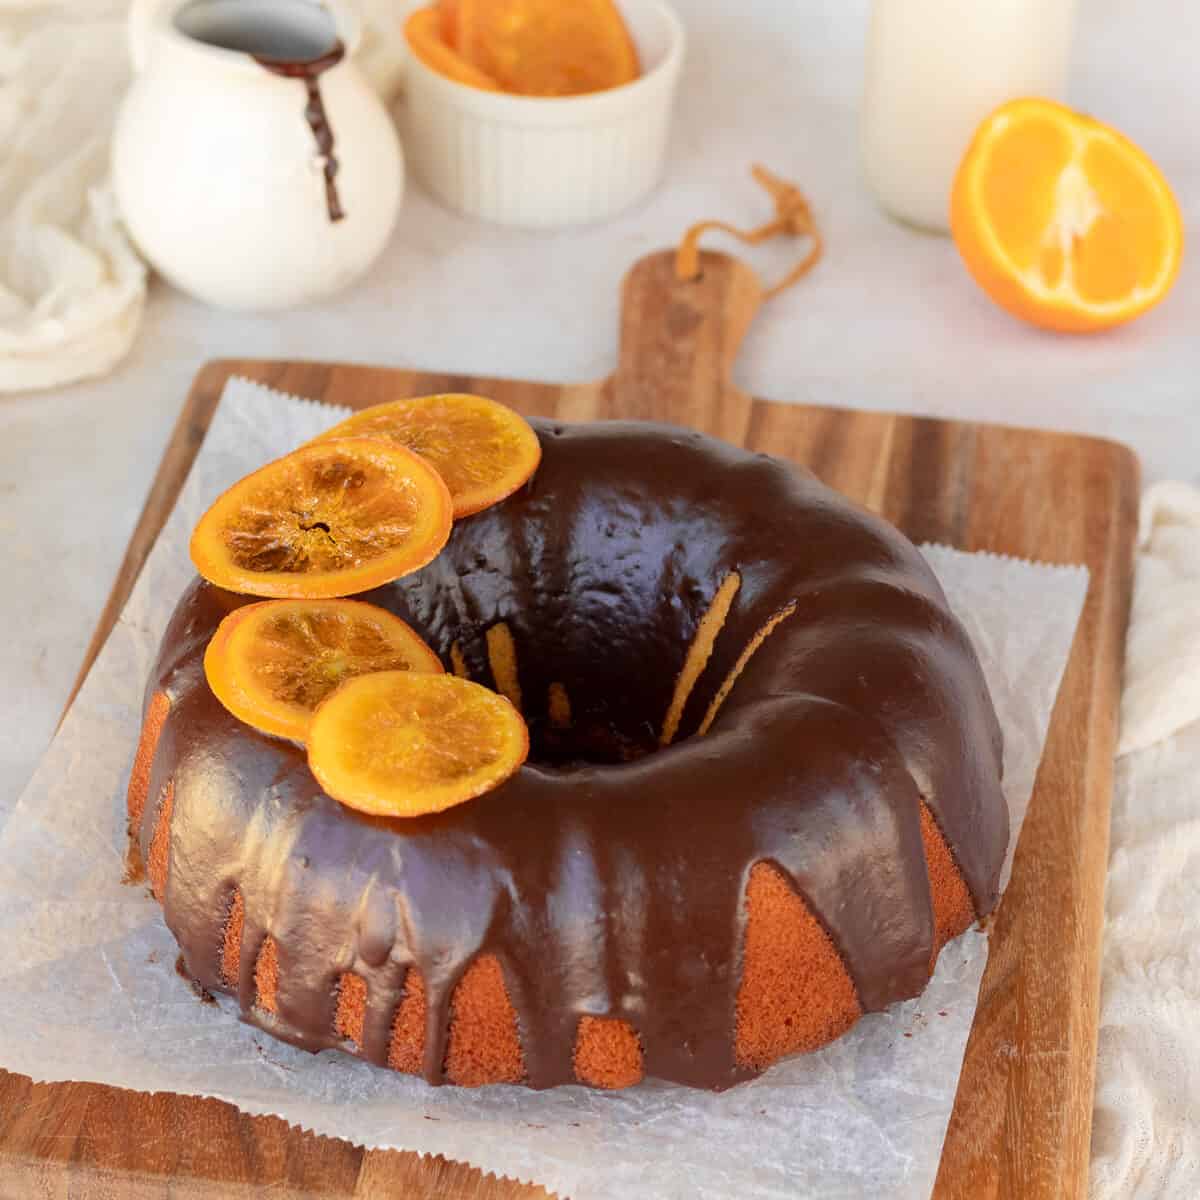 Extra Moist Orange Bundt Cake with Chocolate Glaze